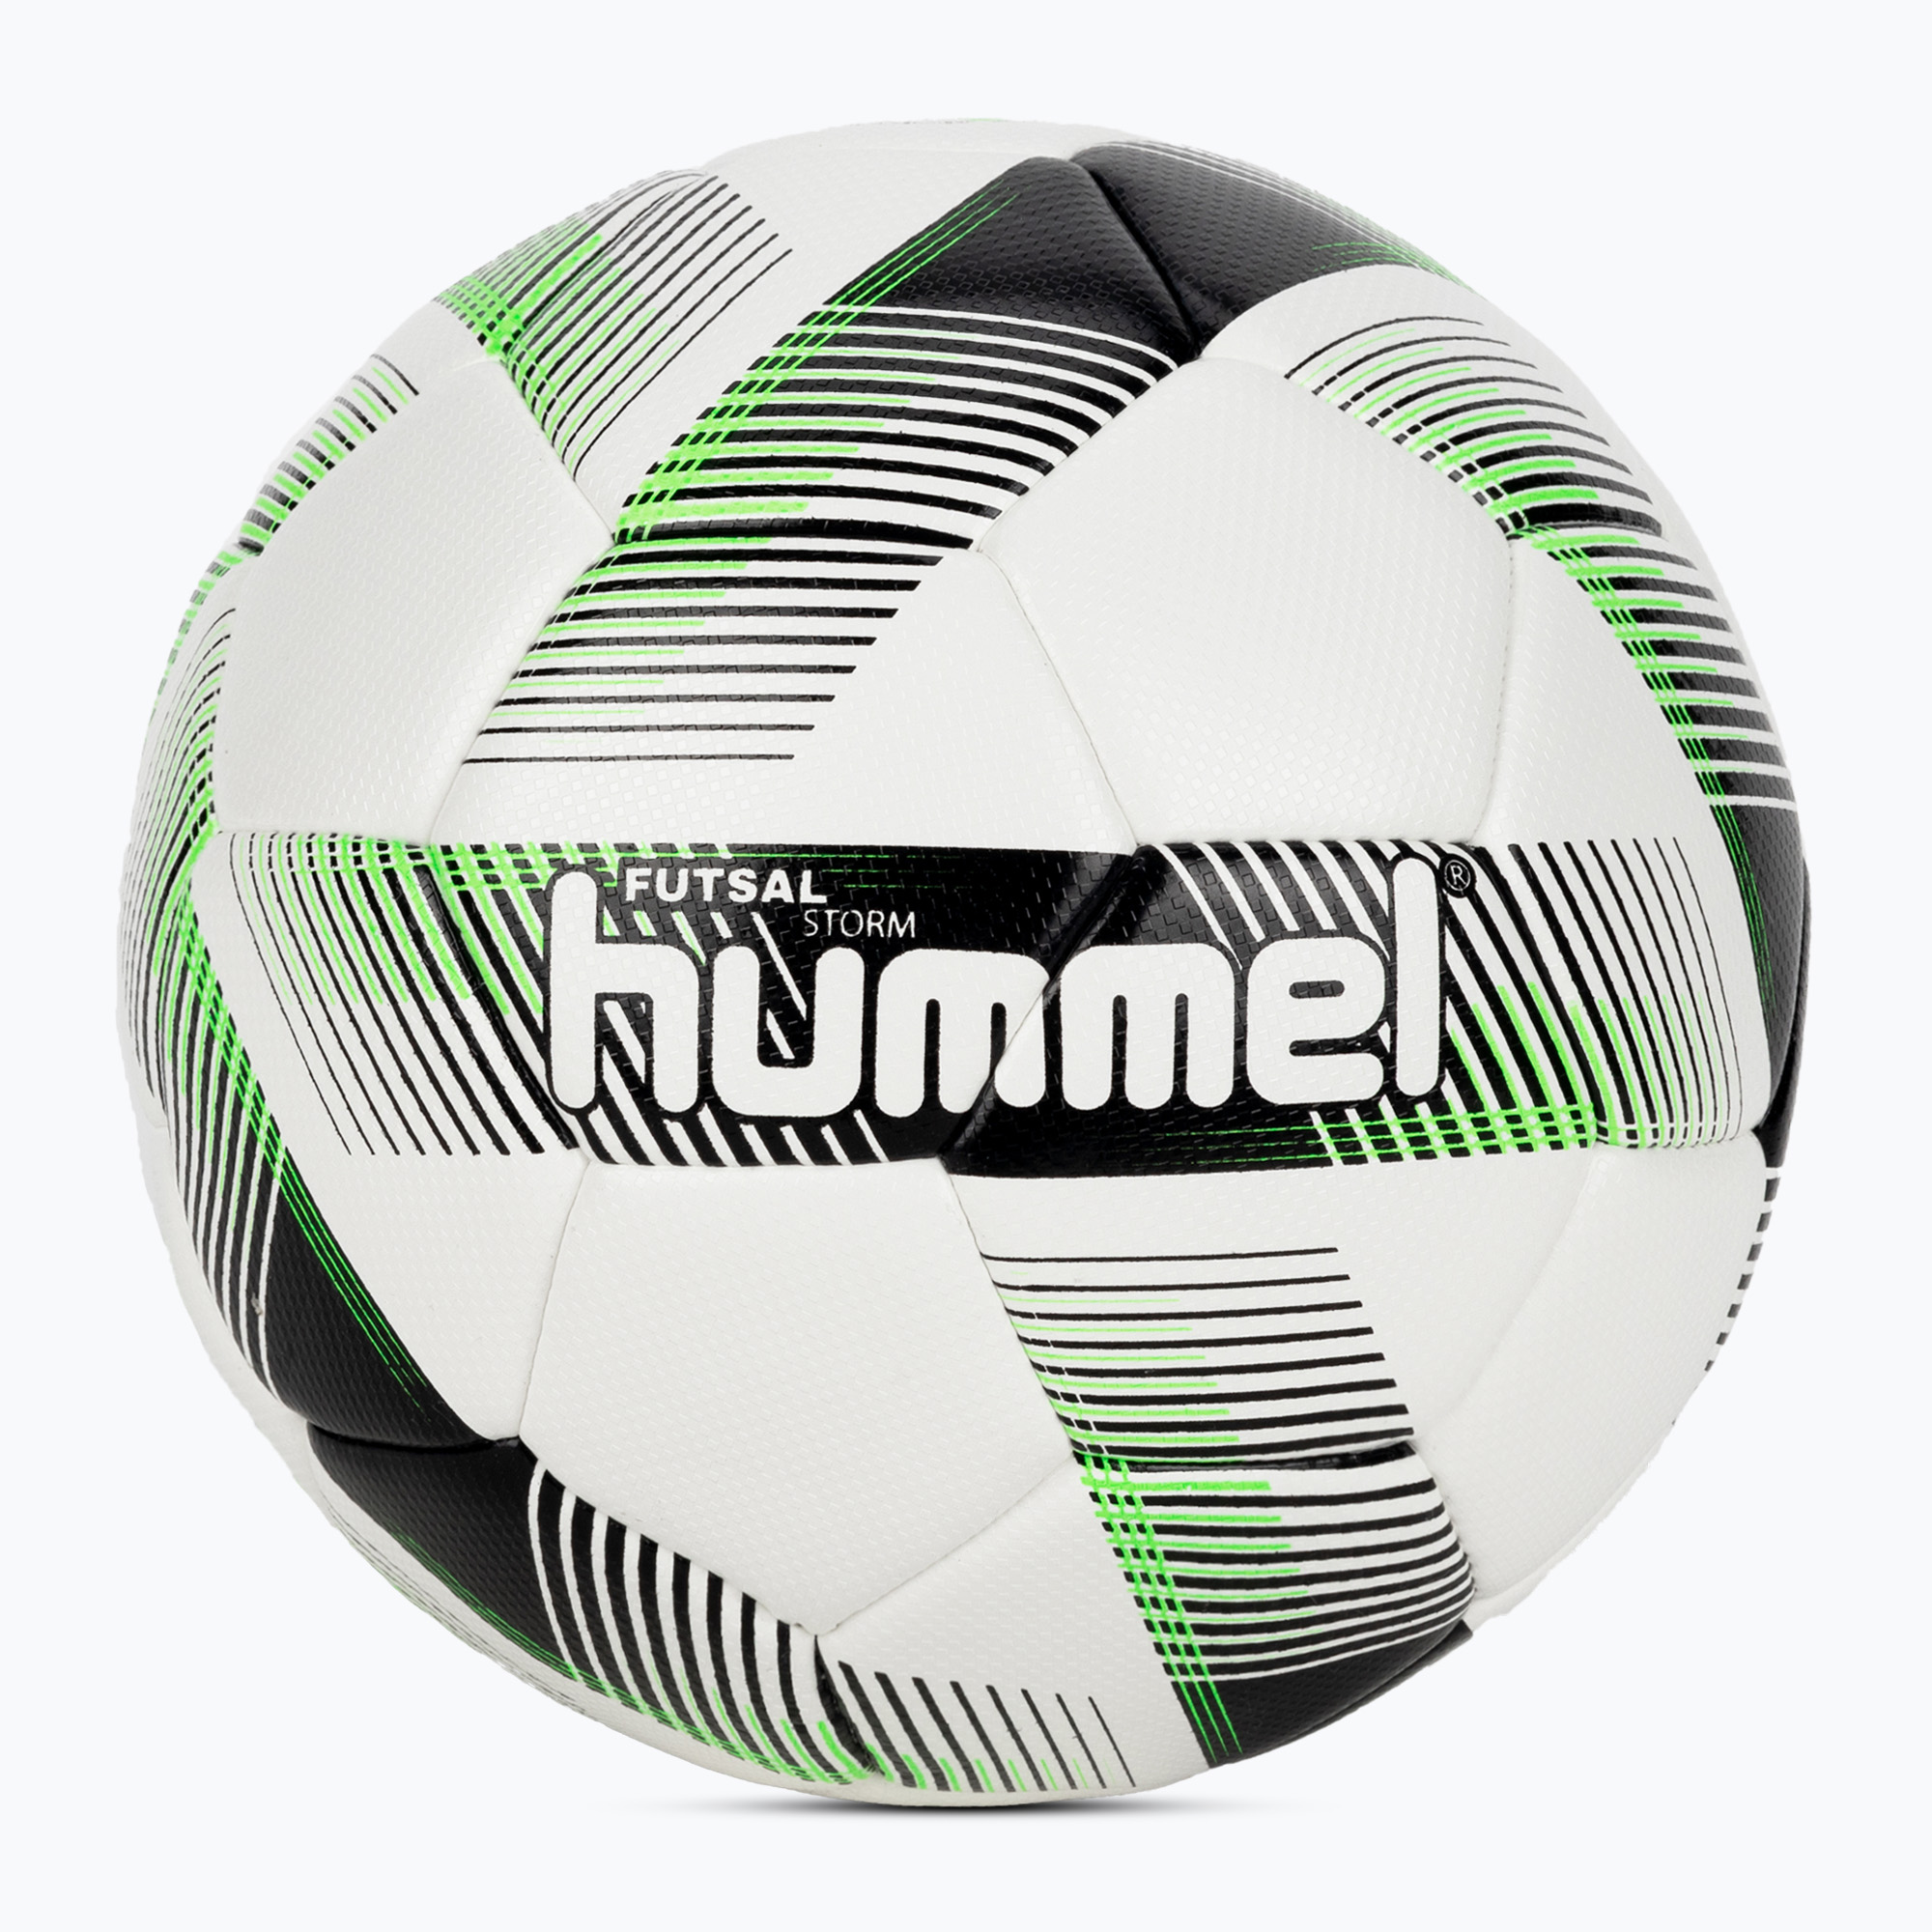 Hummel Storm FB футболна топка бяло/черно/зелено размер 3